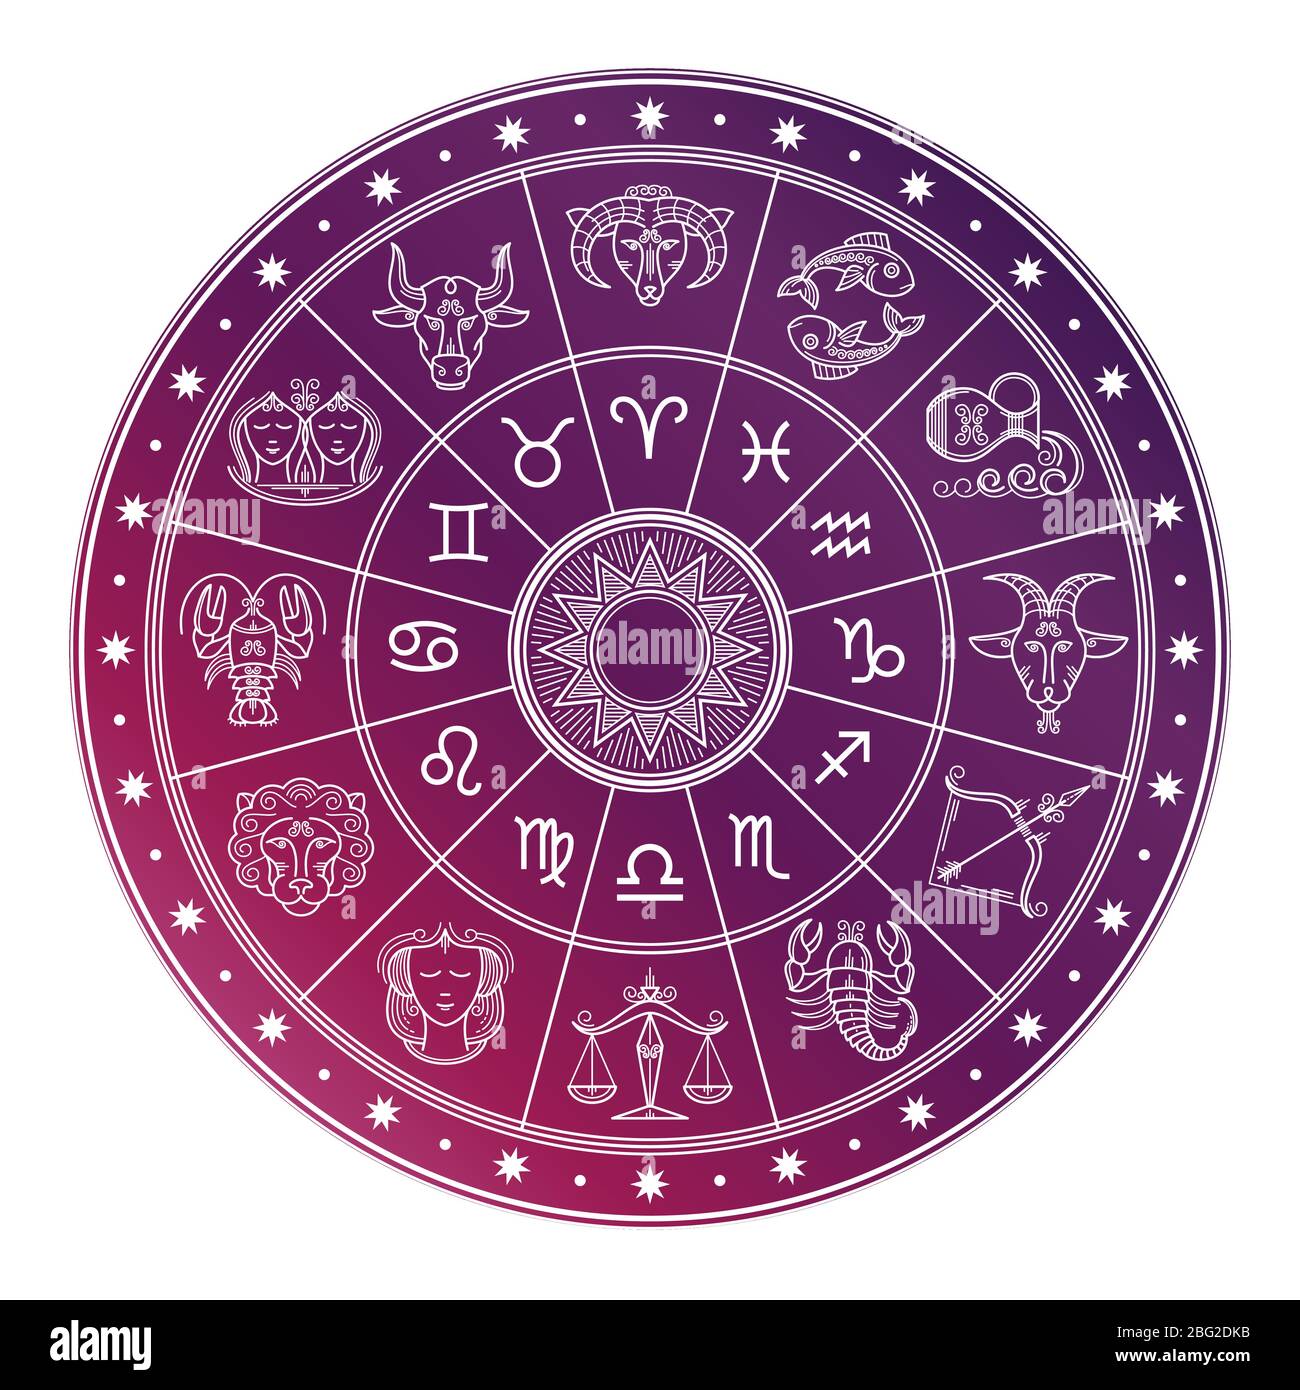 Heller und weißer Astrologie-Horoskop-Kreis mit Tierkreiszeichen auf weißem Hintergrund isoliert. Vektorgrafik Stock Vektor